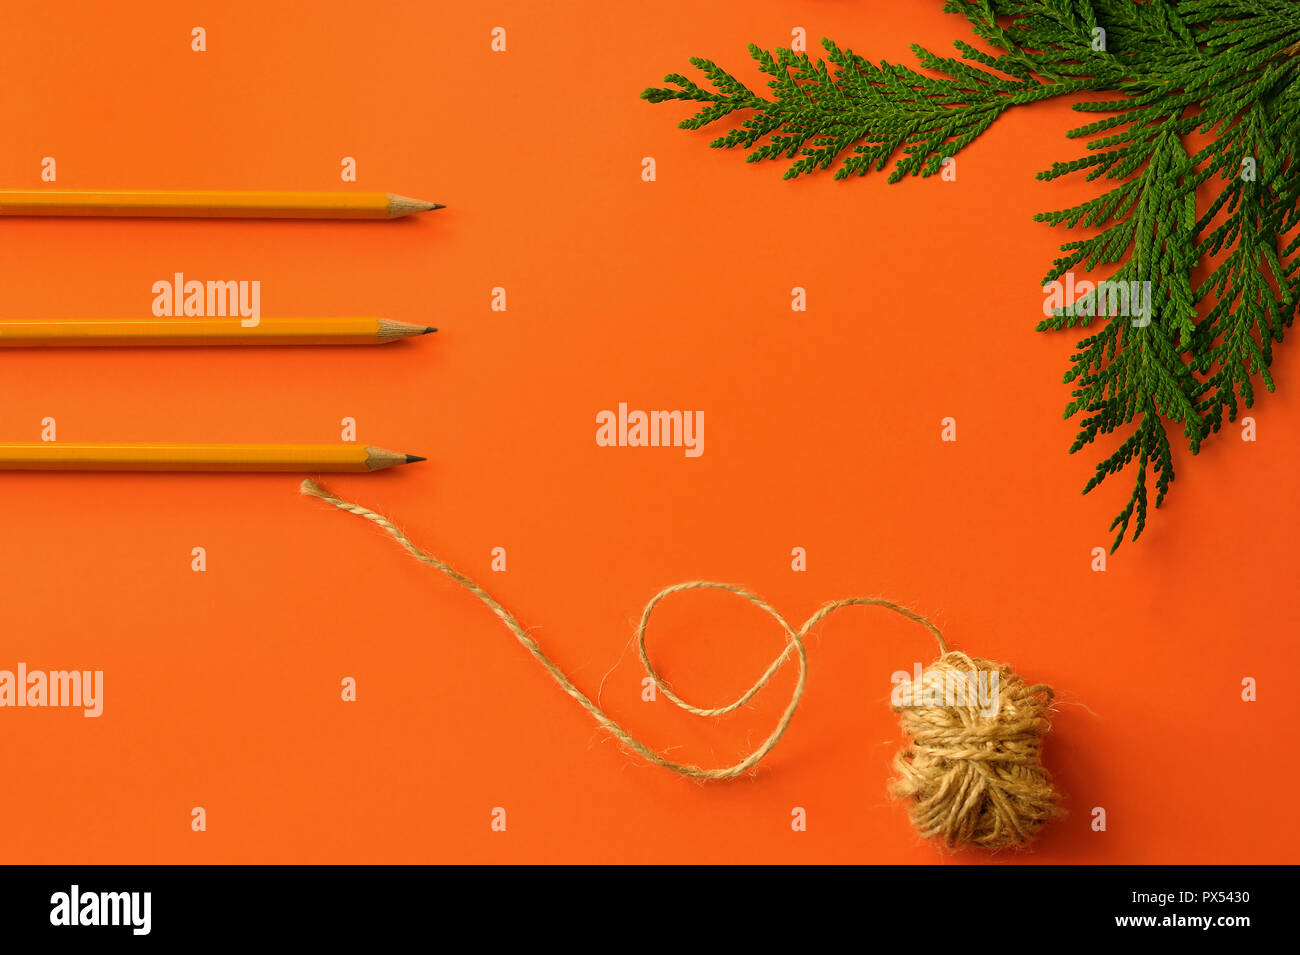 Carton Orange avec trois simples crayons pour dessiner. Banque D'Images